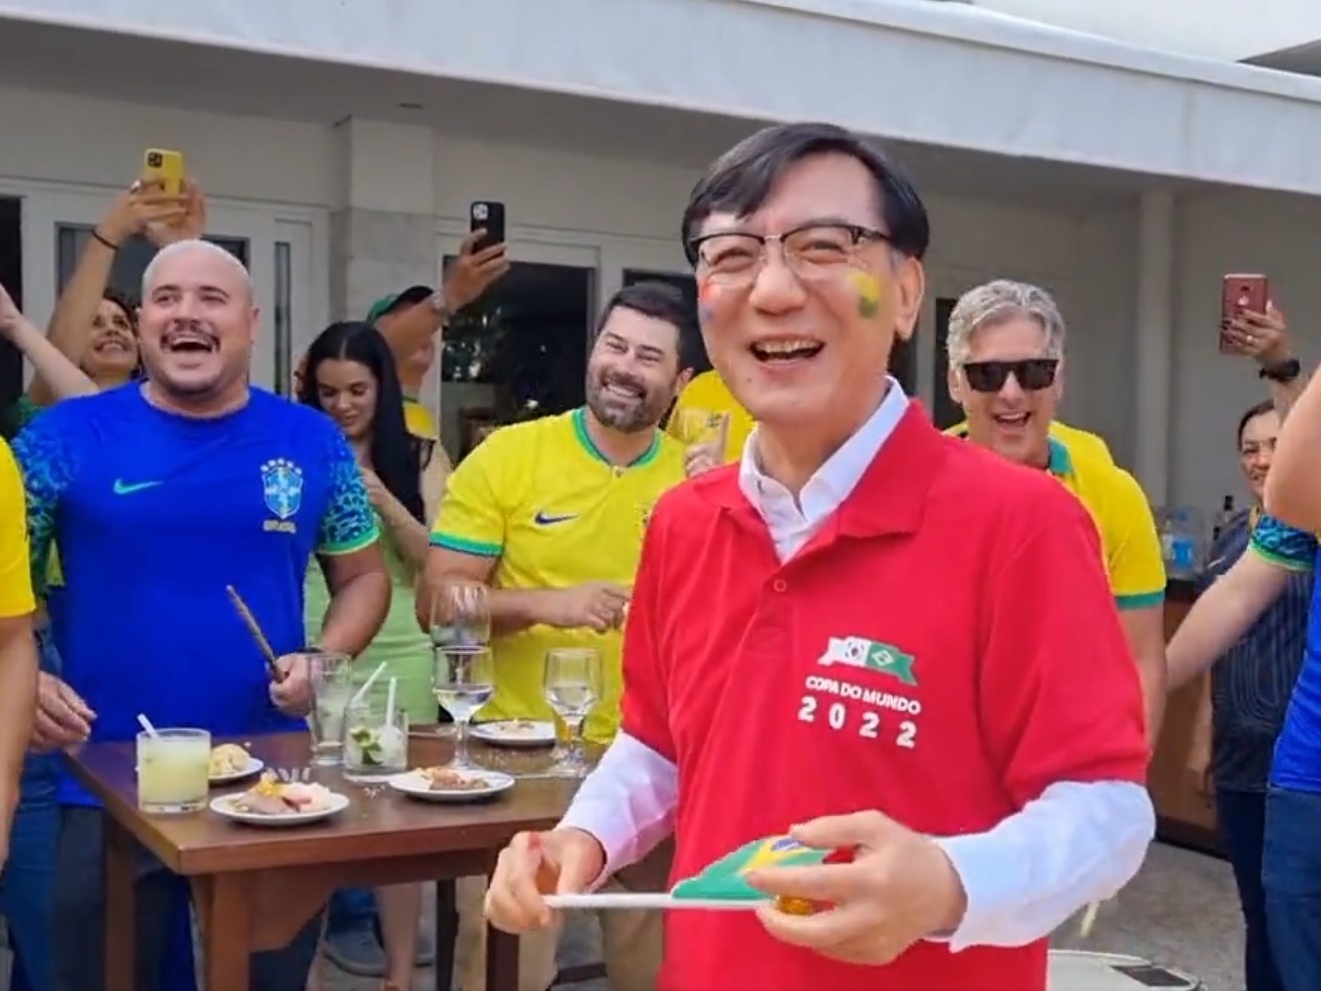 Embaixador da Coreia vê jogo com brasileiros e canta Raça Negra